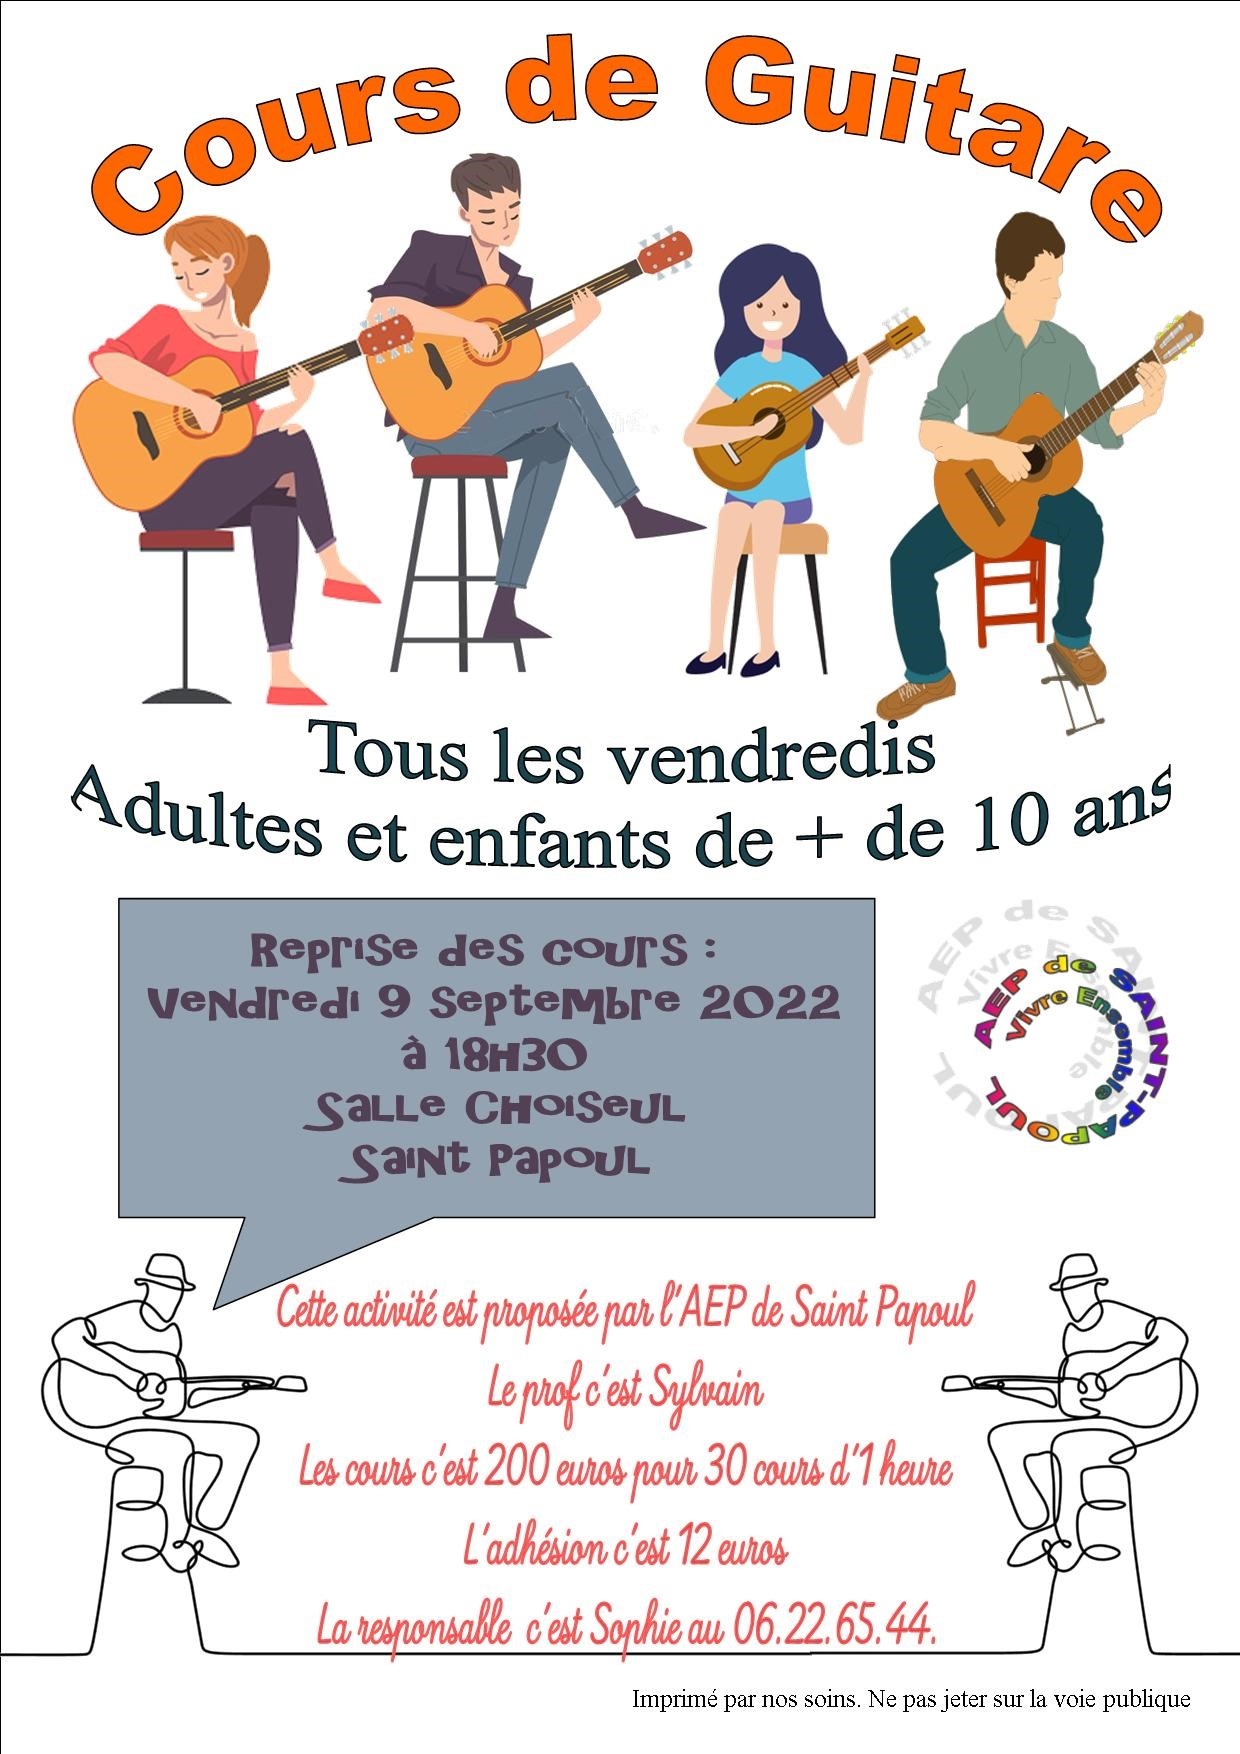 Commune-de-Saint-Papoul-Aude-occitanie-AEP-Reprise cours de guitare 2022-2023